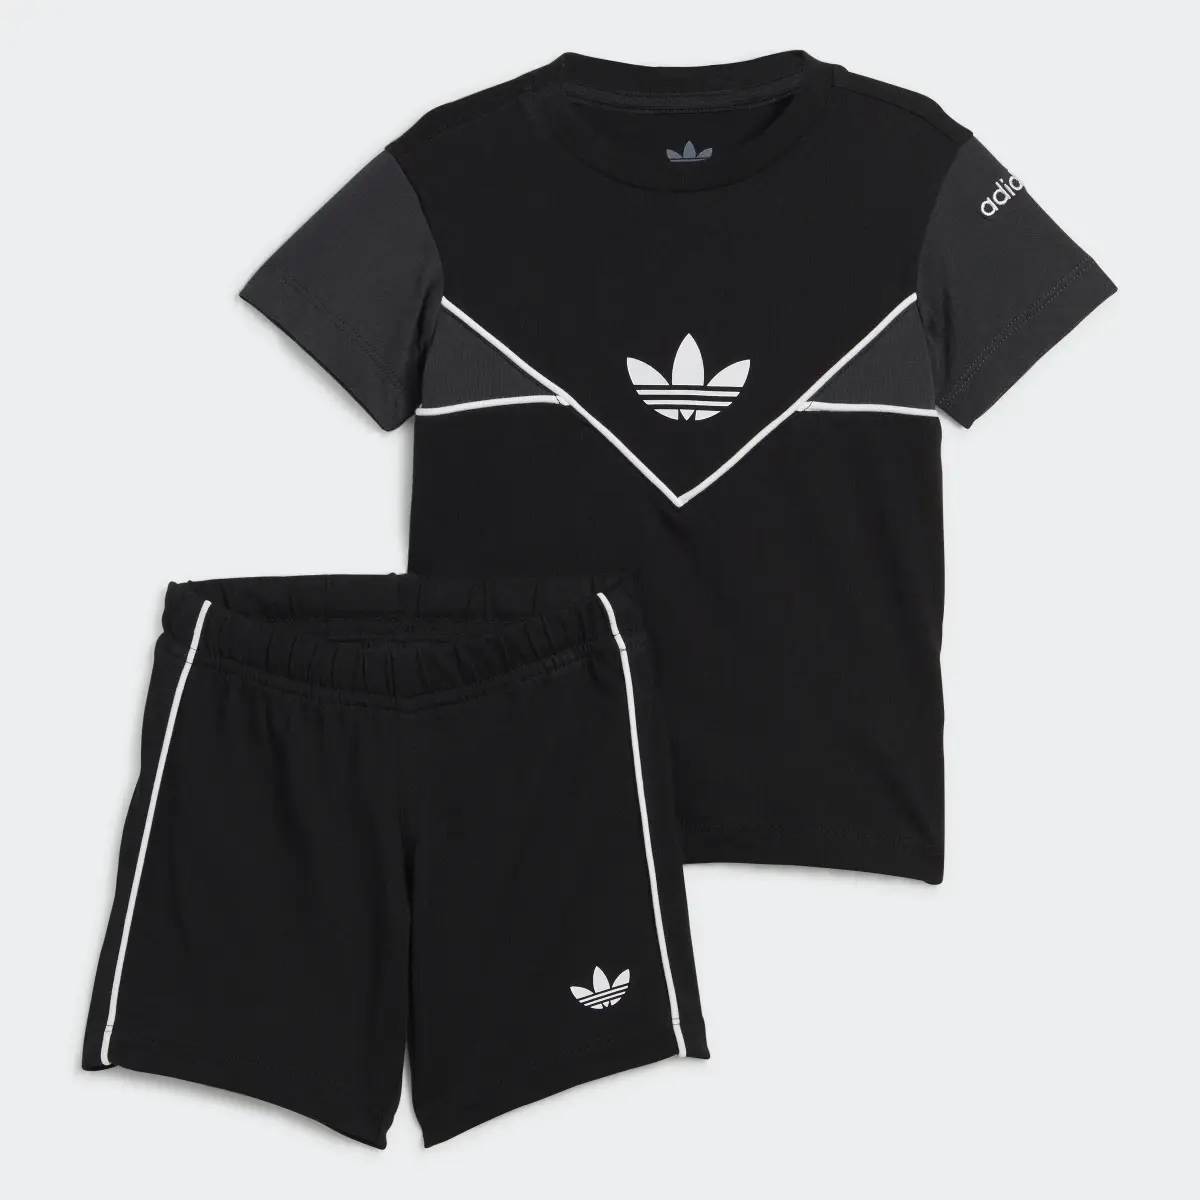 Adidas Adicolor Shorts and Tee Set. 2